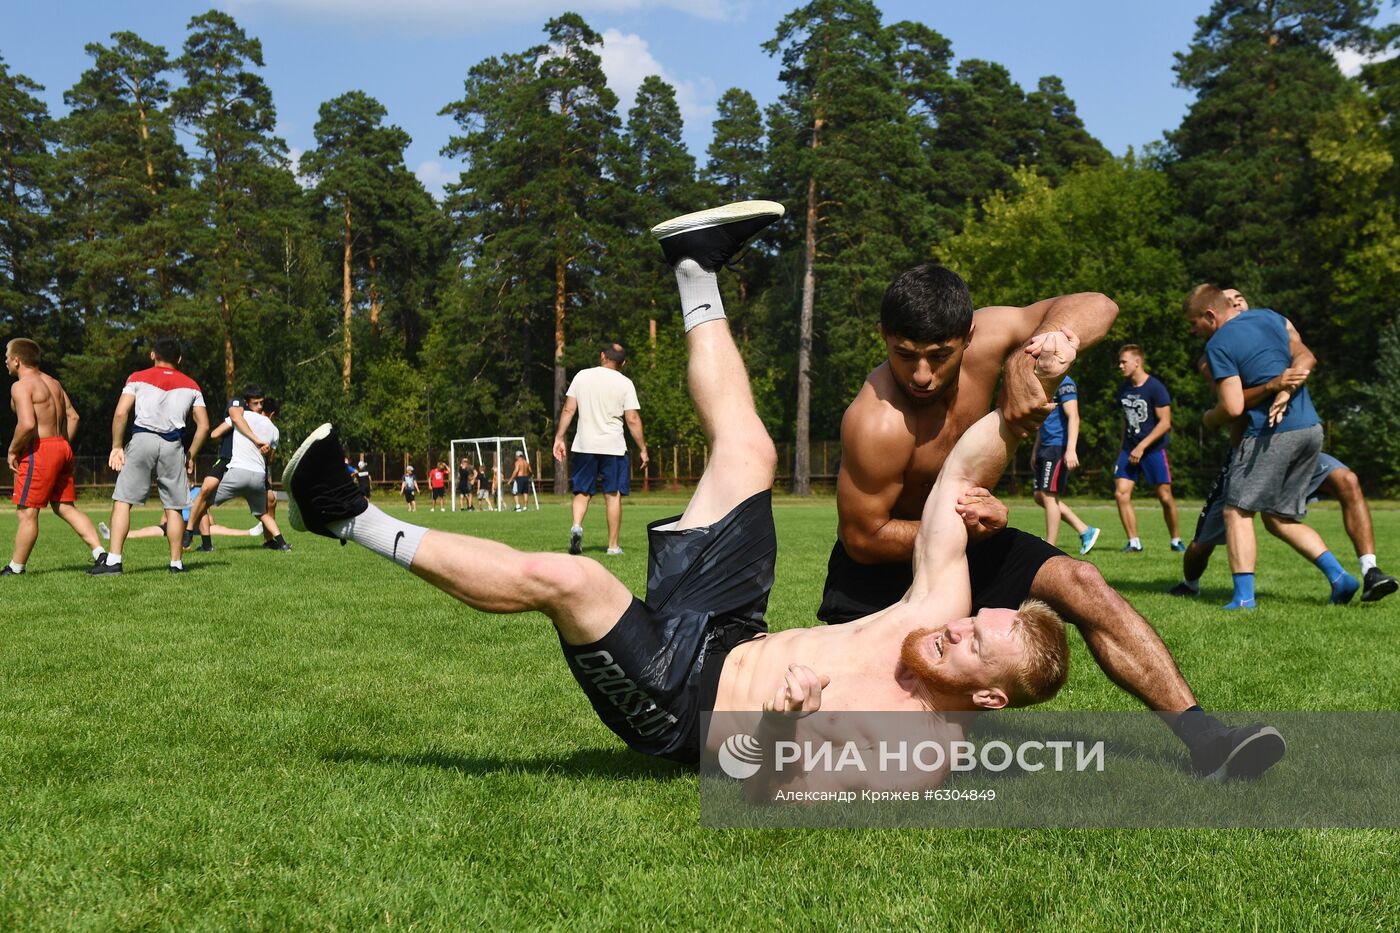 Возобновление работы спортивных учреждений в Новосибирске